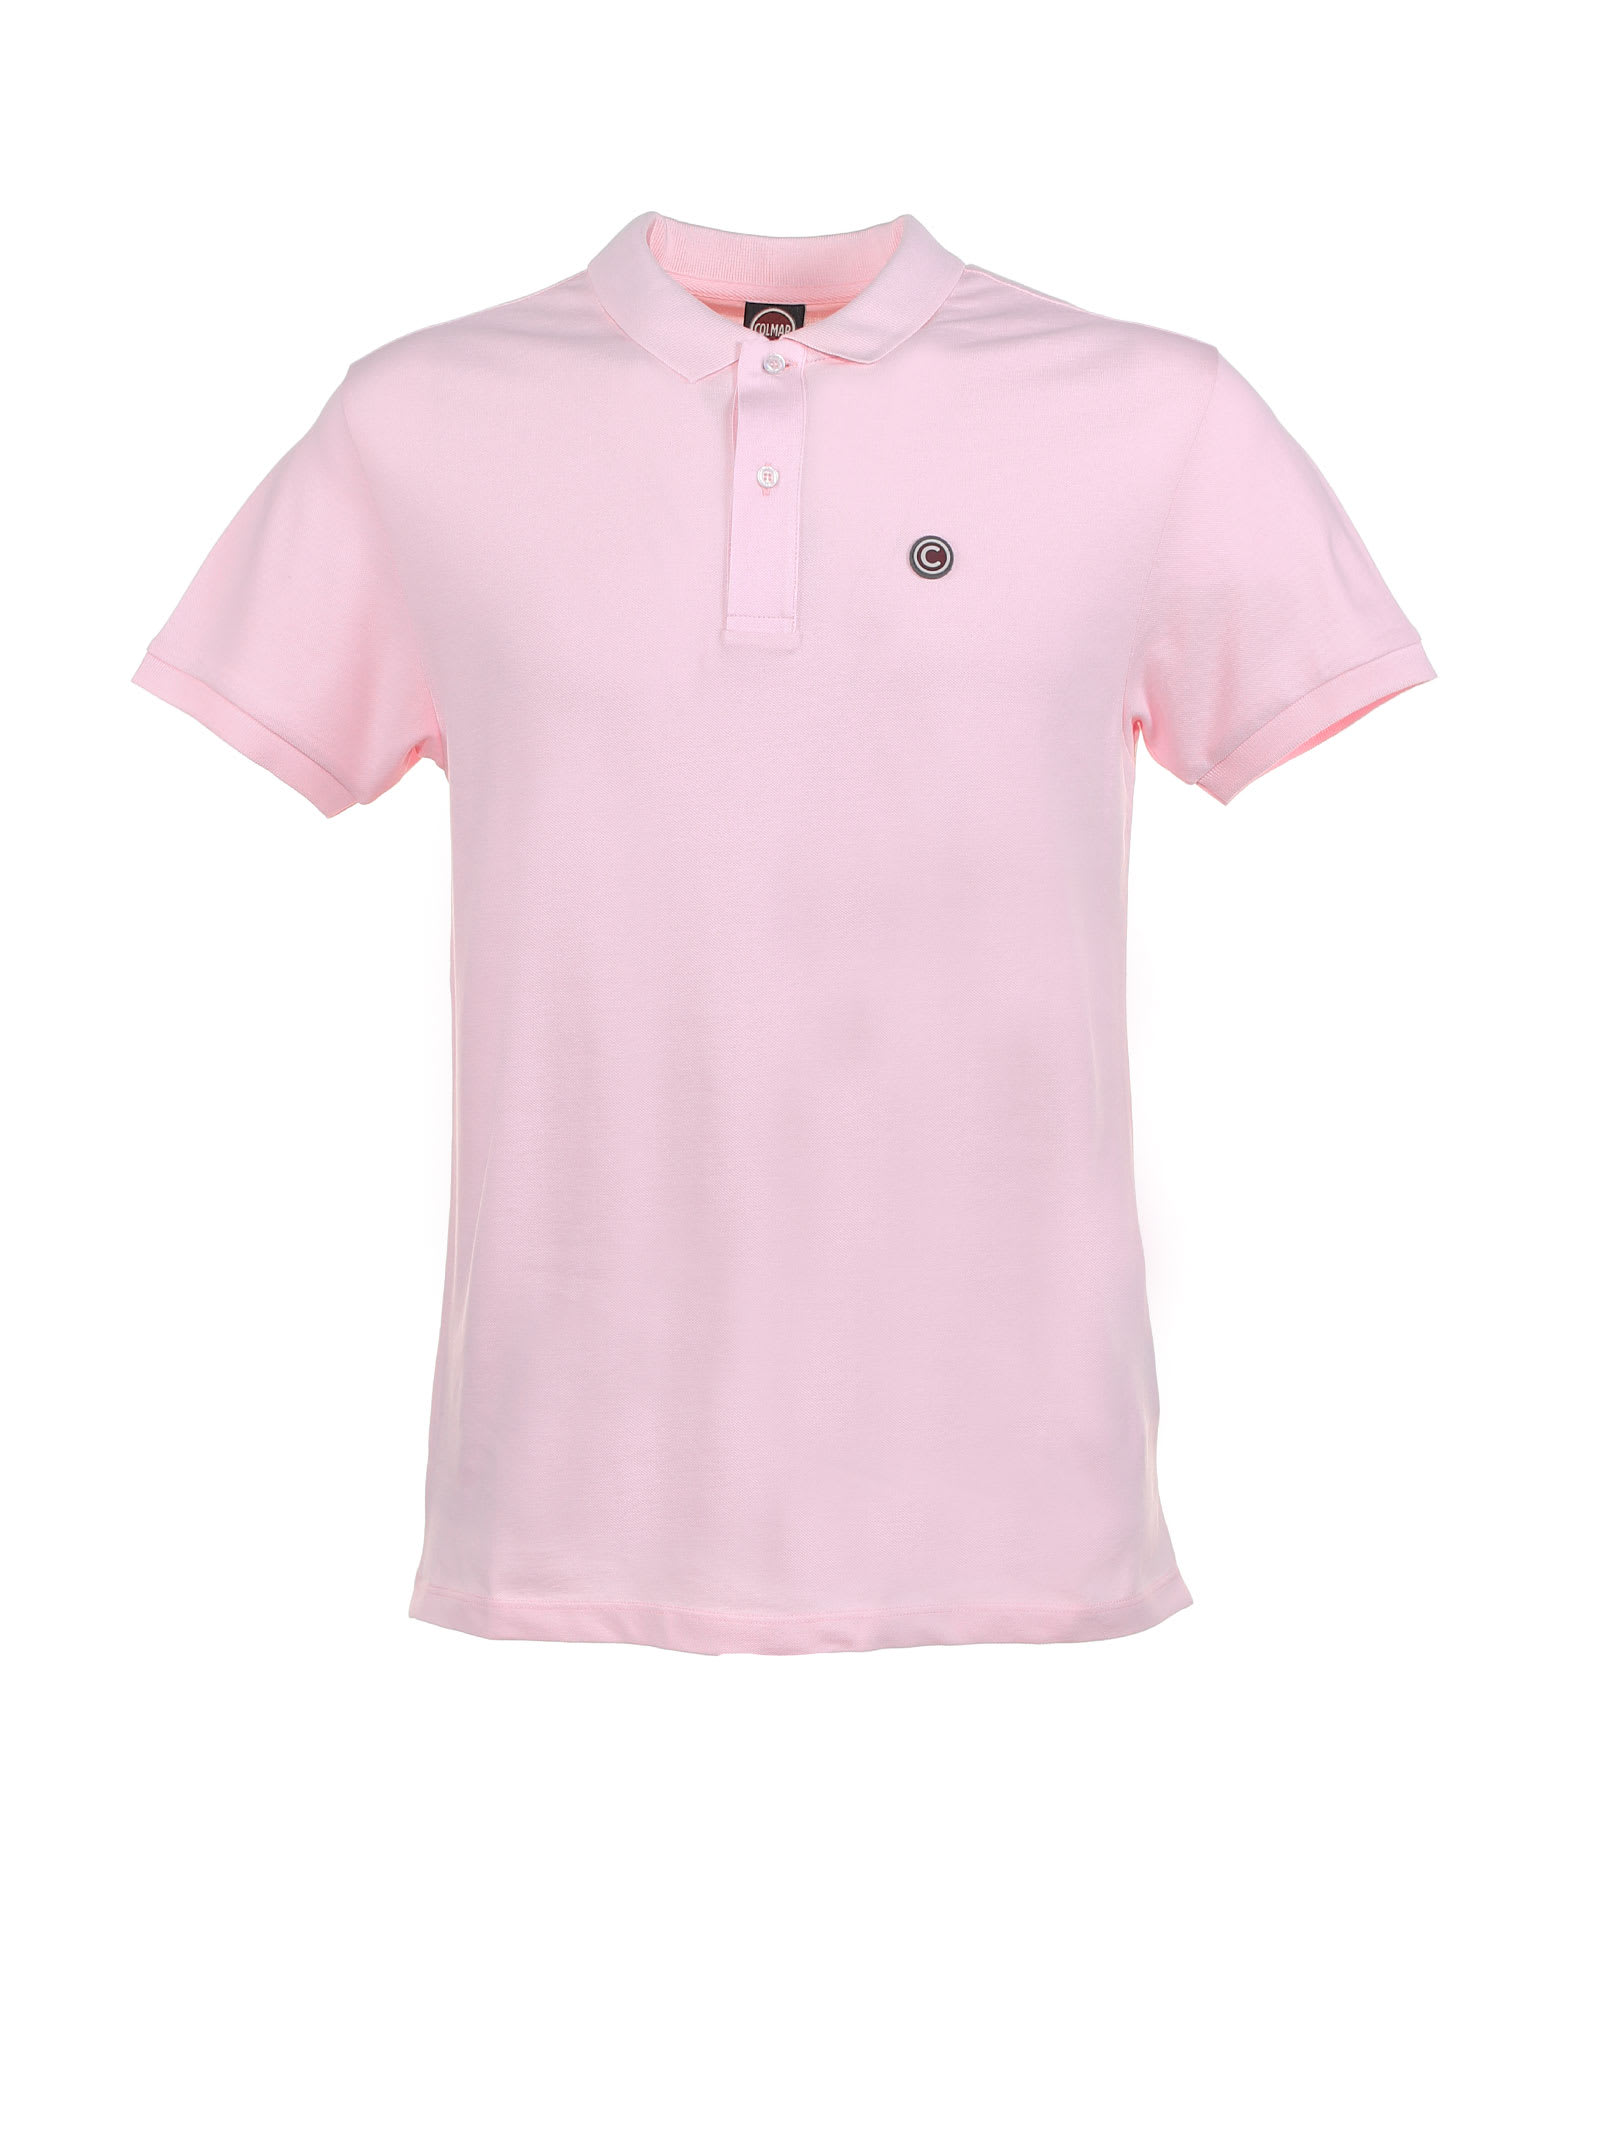 Cotton Polo Shirt With Logo